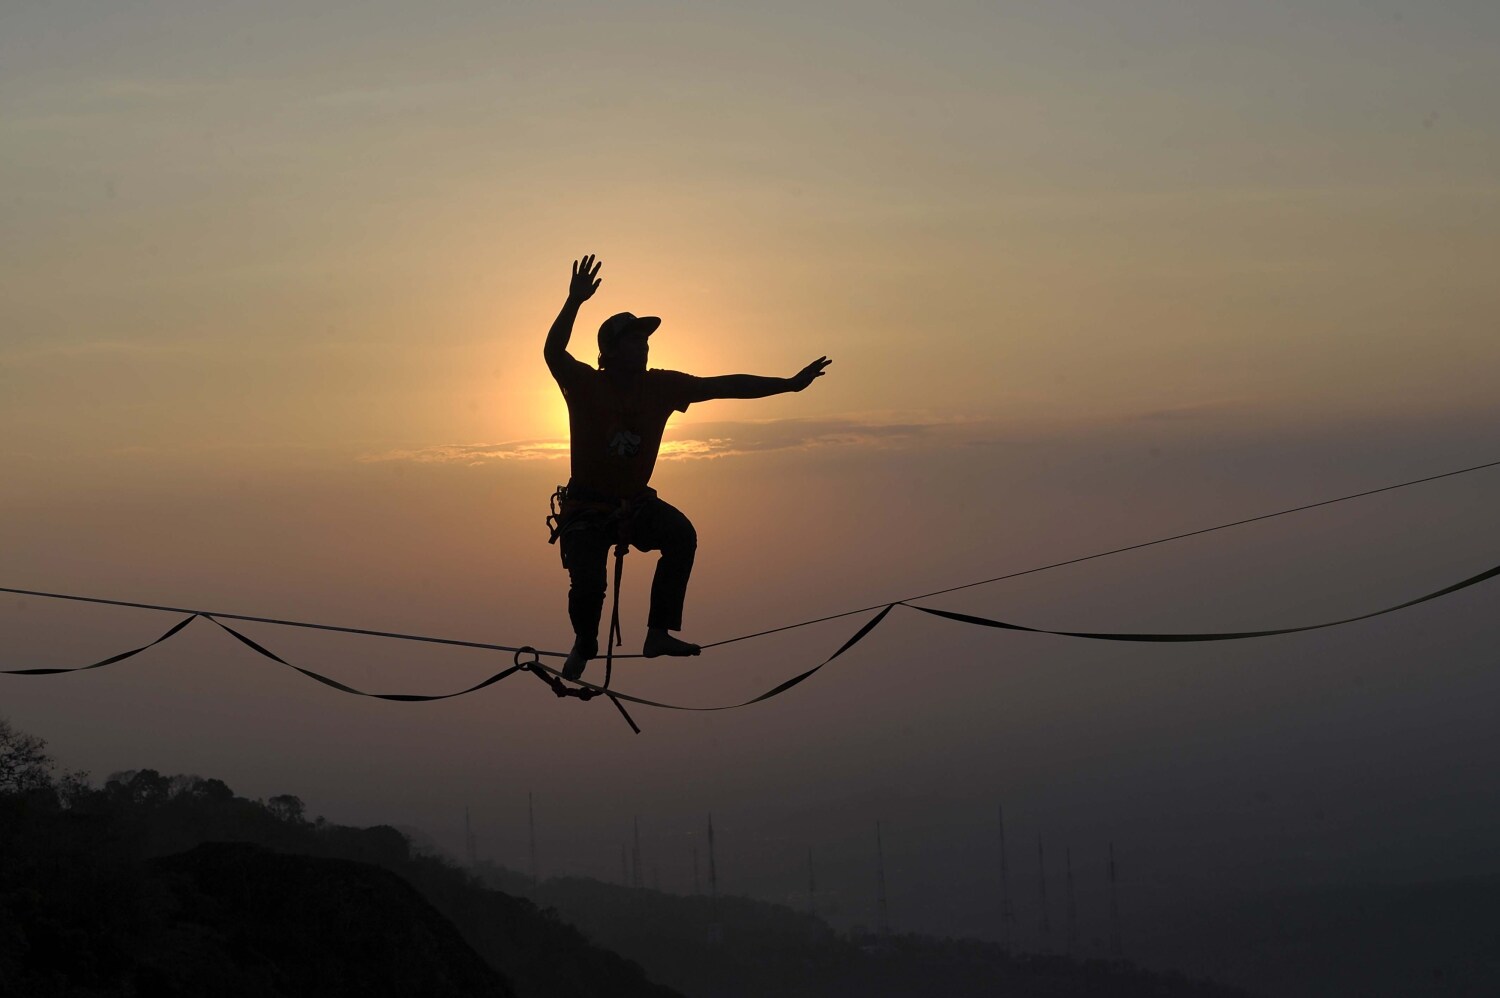 El atleta de deportes extremos Andi Ardi caminando sobre una cuerda floja a la altura de 740 metros (2.427 pies) en el Monte Nglanggeran en Yogyakarta. Ardi realizó la hazaña como parte de una campaña de turismo para promover el lugar escénico.